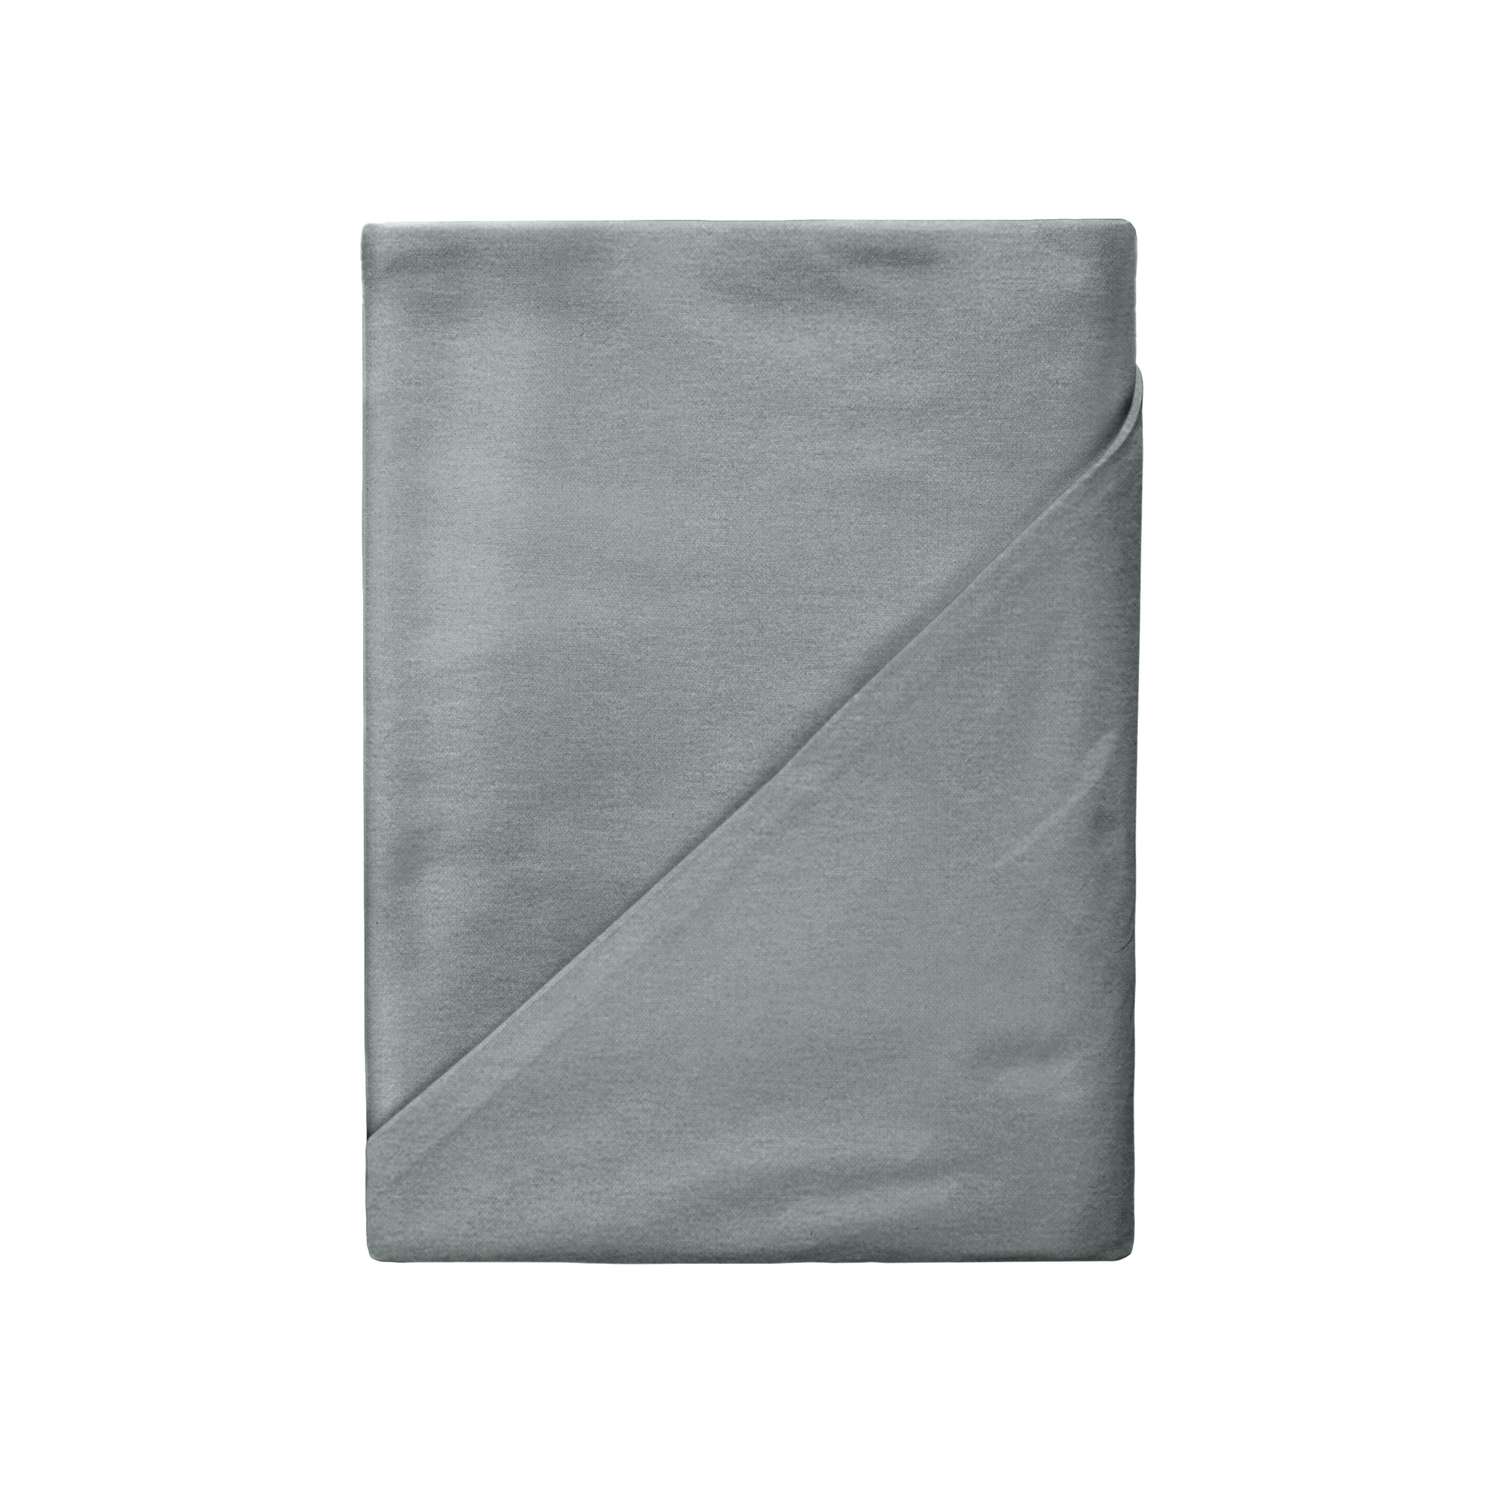 Комплект постельного белья Absolut 2СП Silver наволочки 50х70 меланж - фото 3